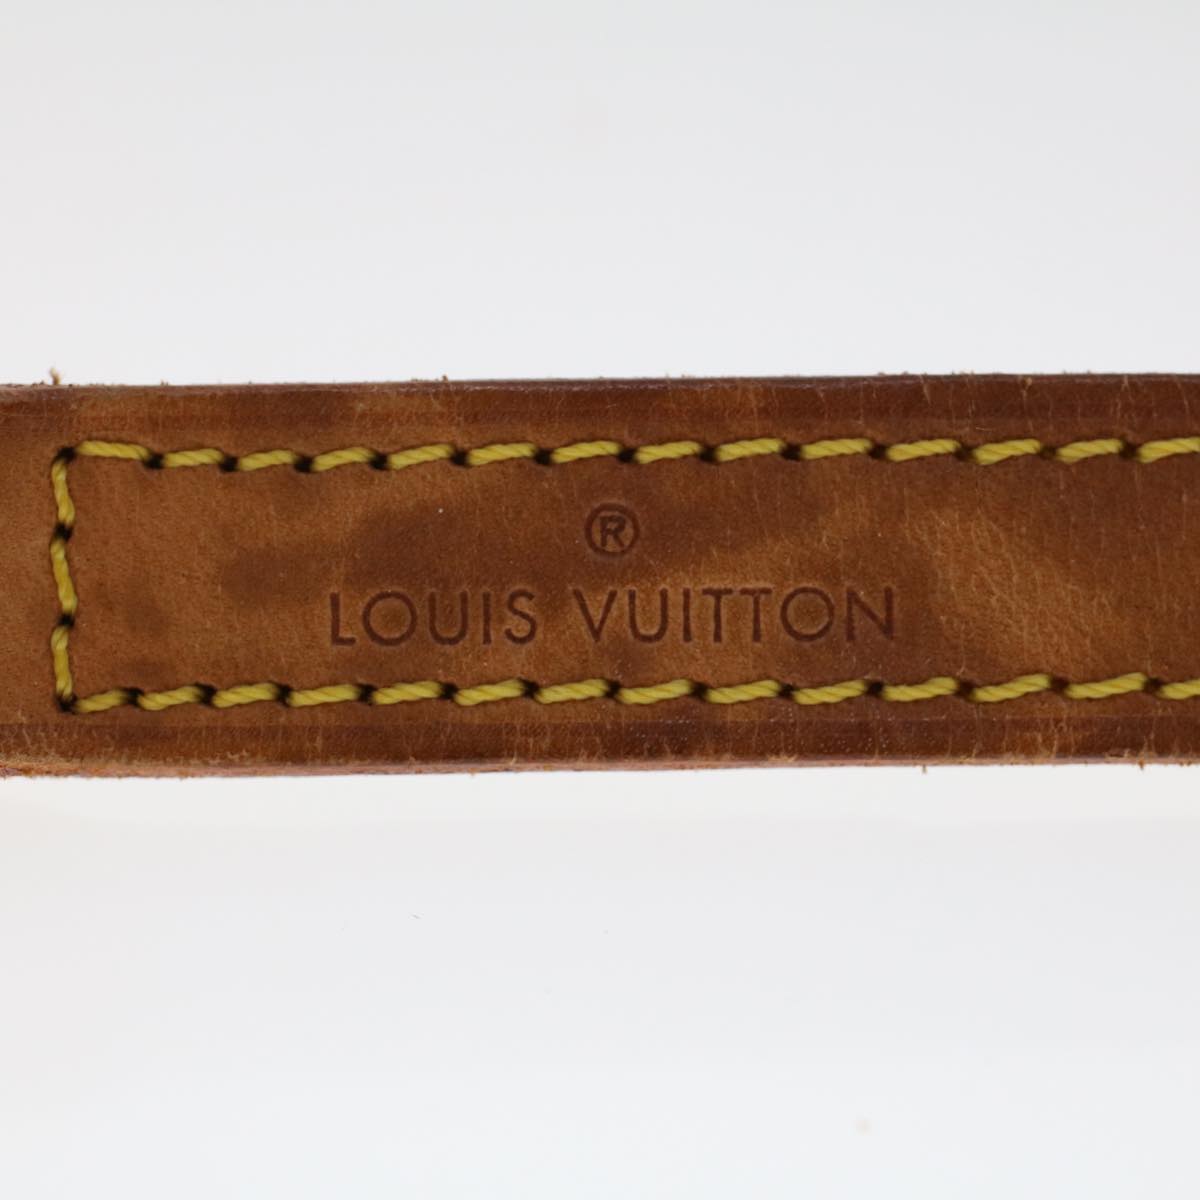 LOUIS VUITTON Shoulder Strap Leather 36.2"" Beige LV Auth 48476